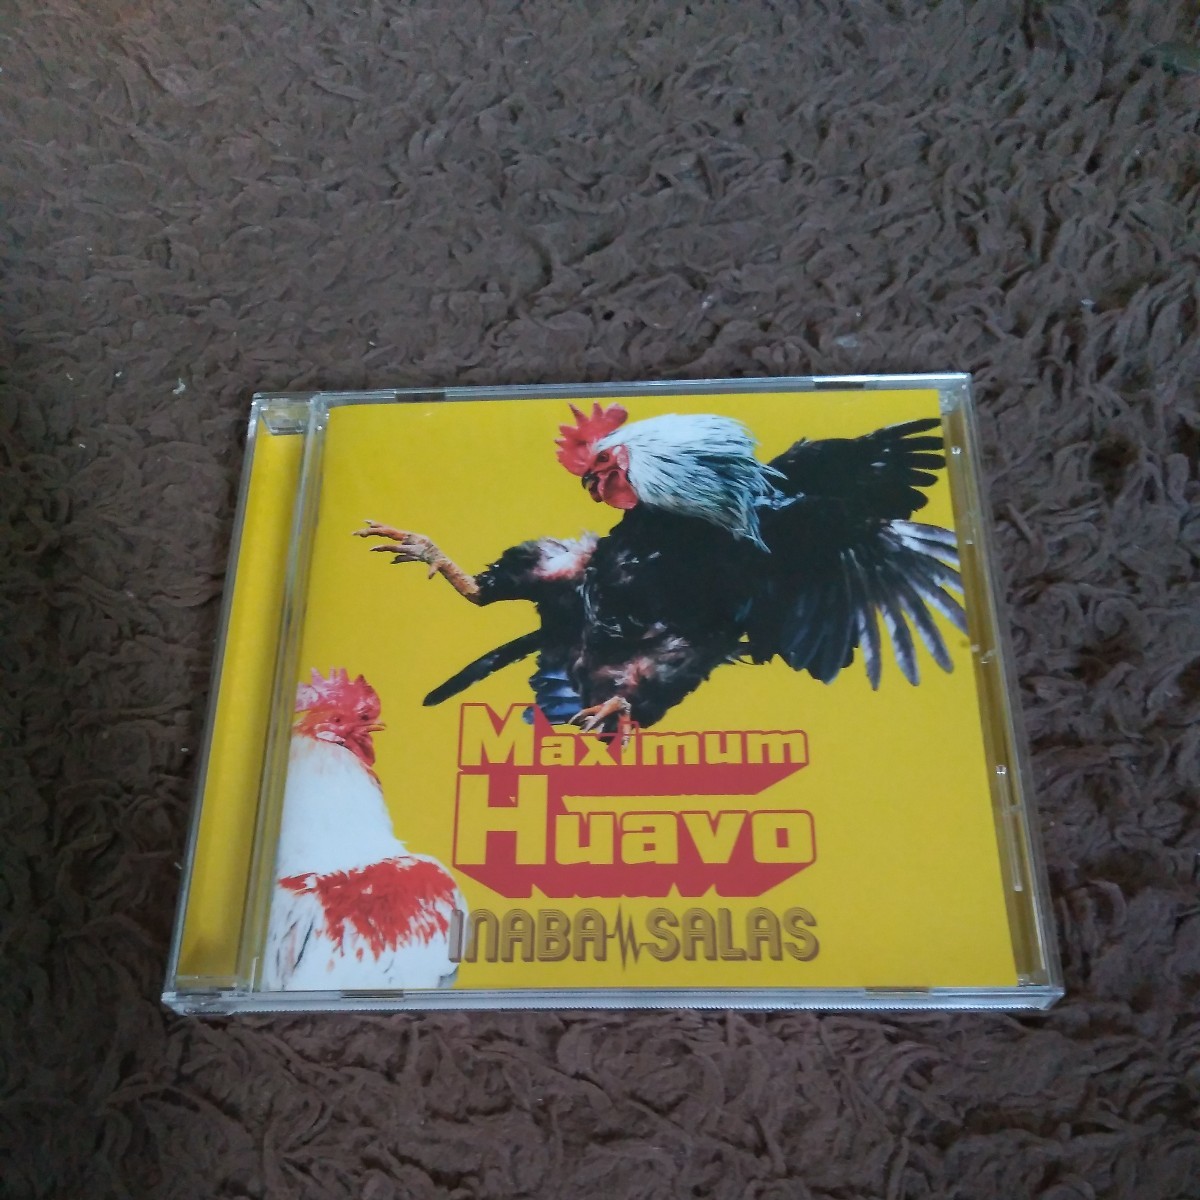 INABA/SALAS Maximum Huavo 稲葉浩志 B'z CD アルバム_画像1